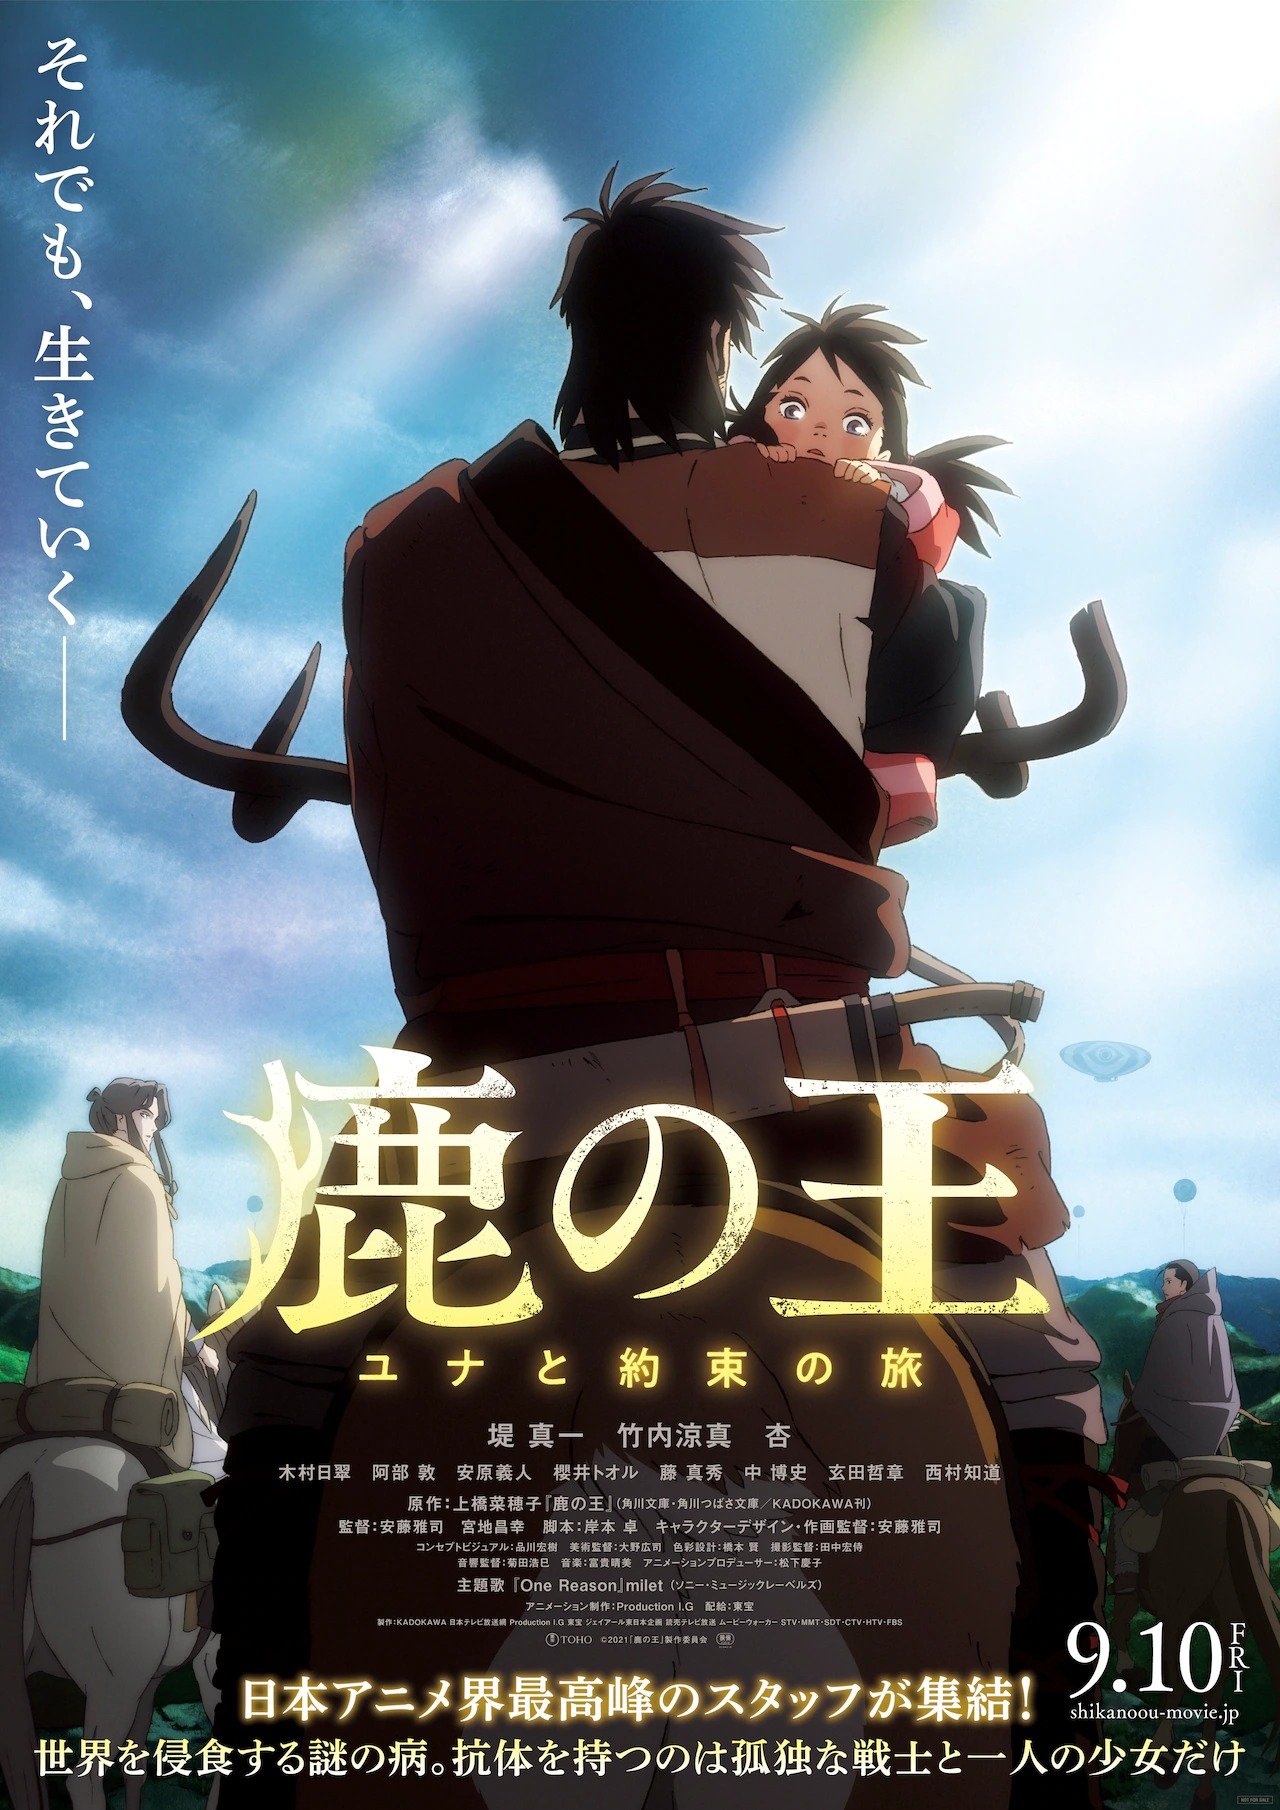 Trailers de Hikari no Ou revelam data de estreia da 2ª temporada - Manga  Livre RS